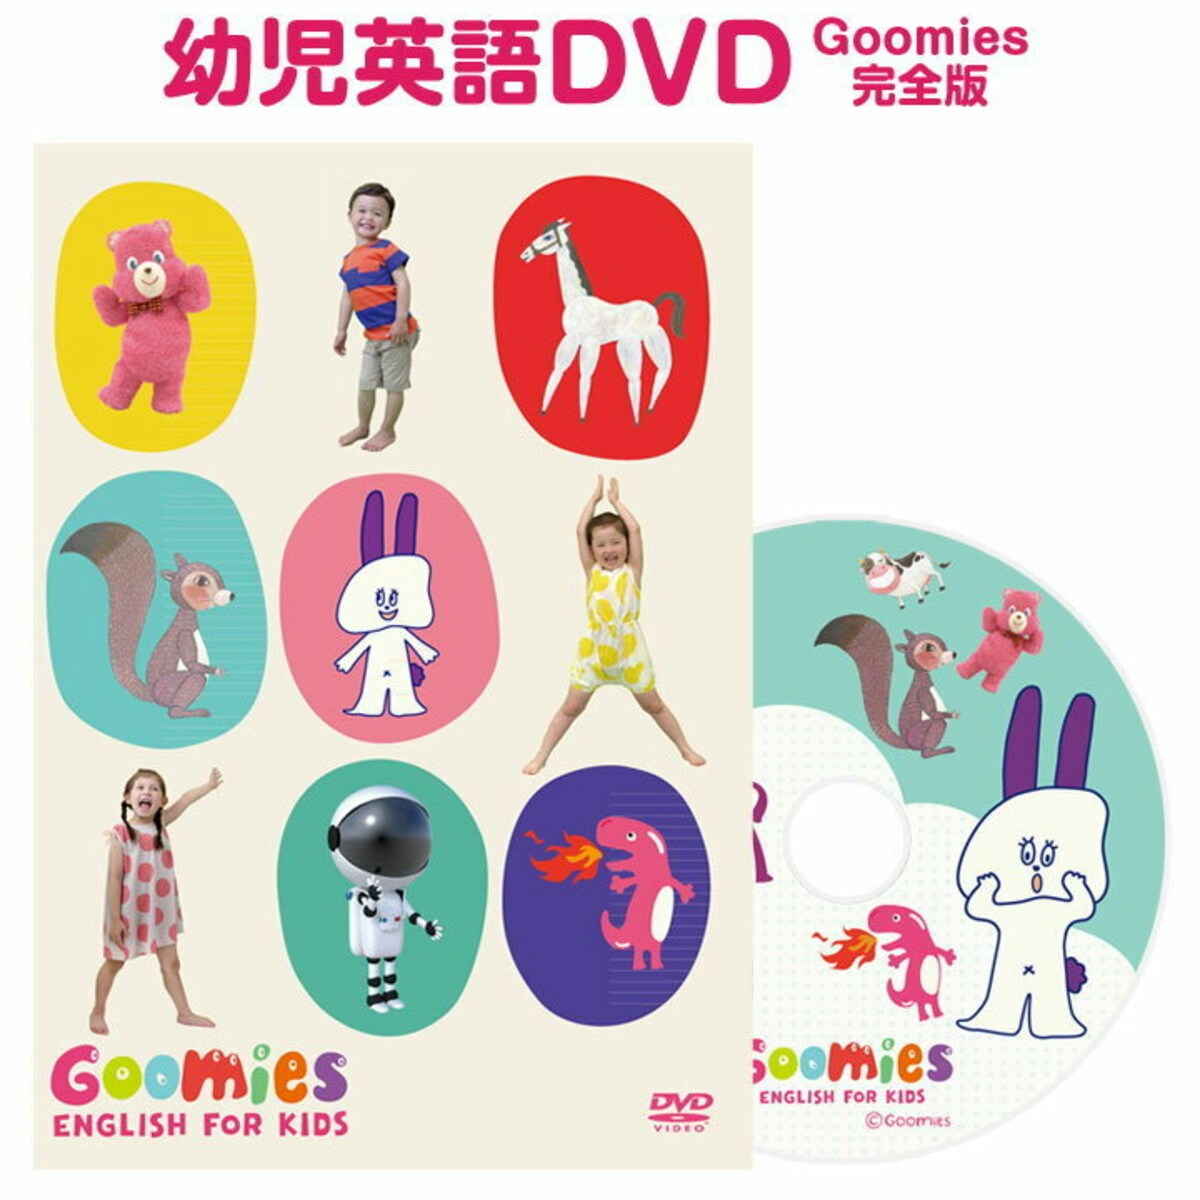 「幼児英語 DVD Goomies (グーミーズ) English for Kids」